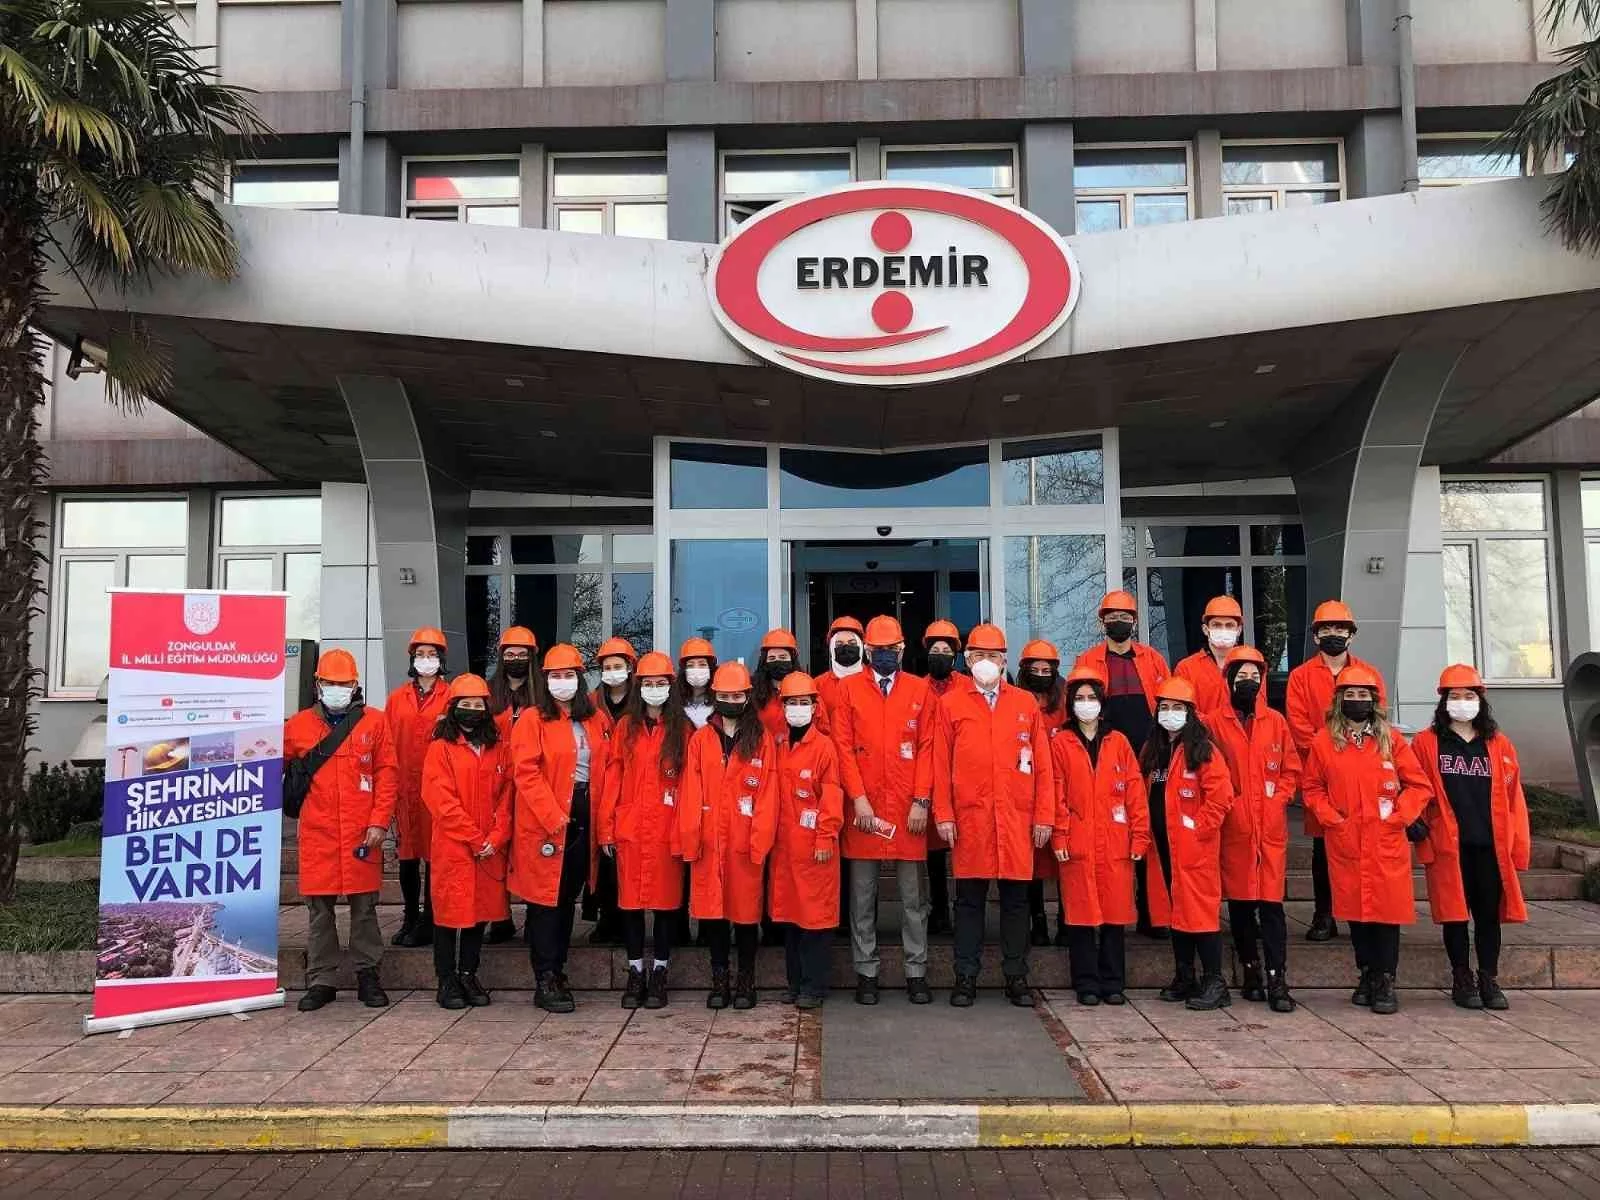 130 lise öğrencisi Erdemiri ve üretim süreçlerini tanıma fırsatı buldu